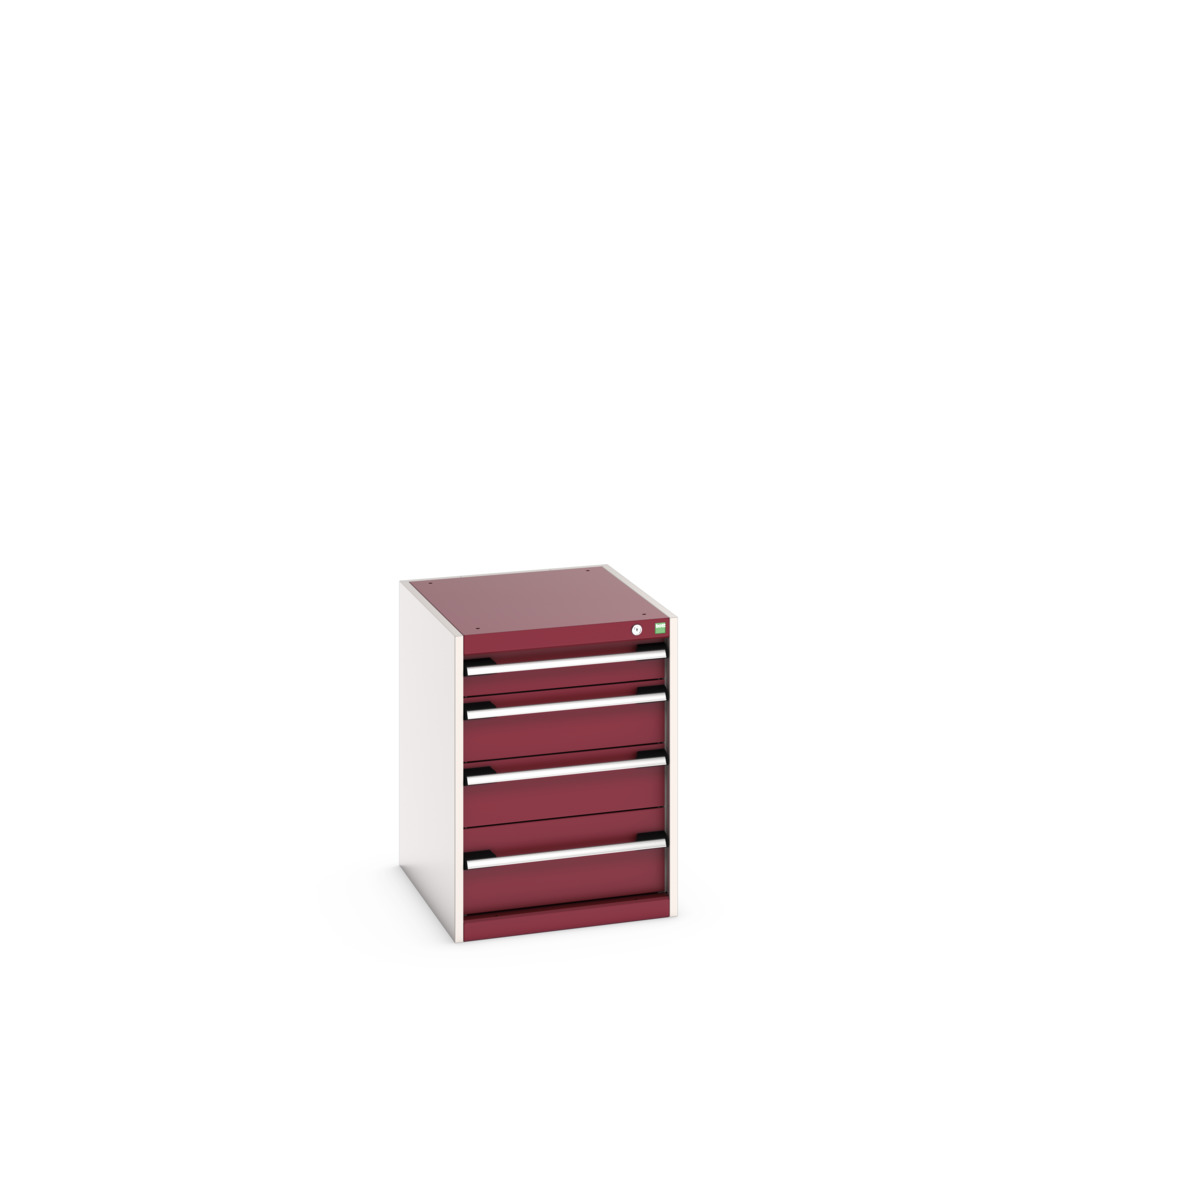 40018025.24V - cubio drawer cabinet